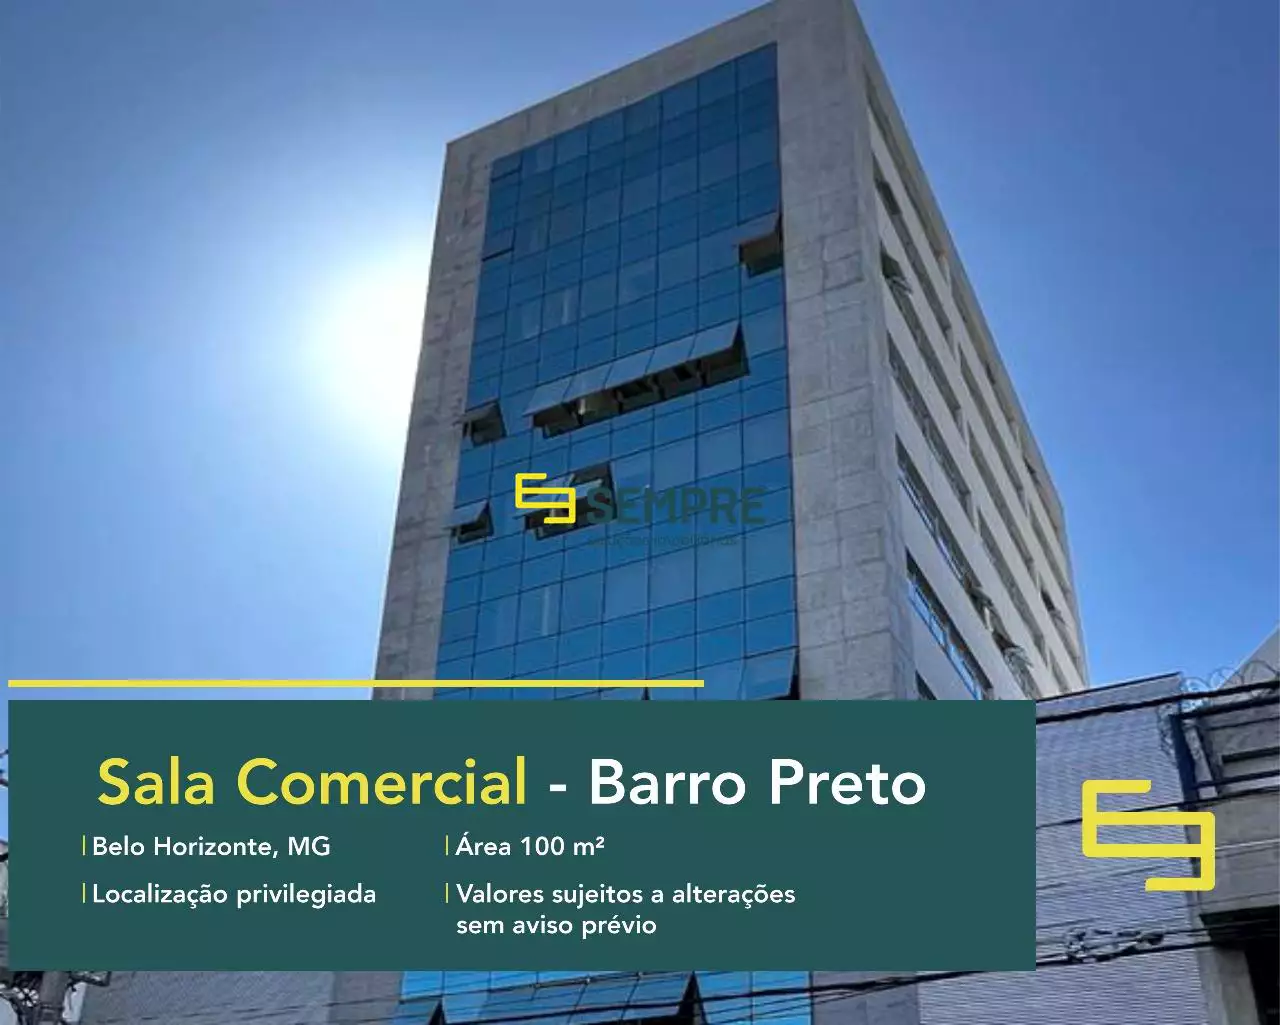 Sala comercial à venda no Barro Preto em Belo Horizonte, excelente localização. O estabelecimento comercial conta com área de 100 m².